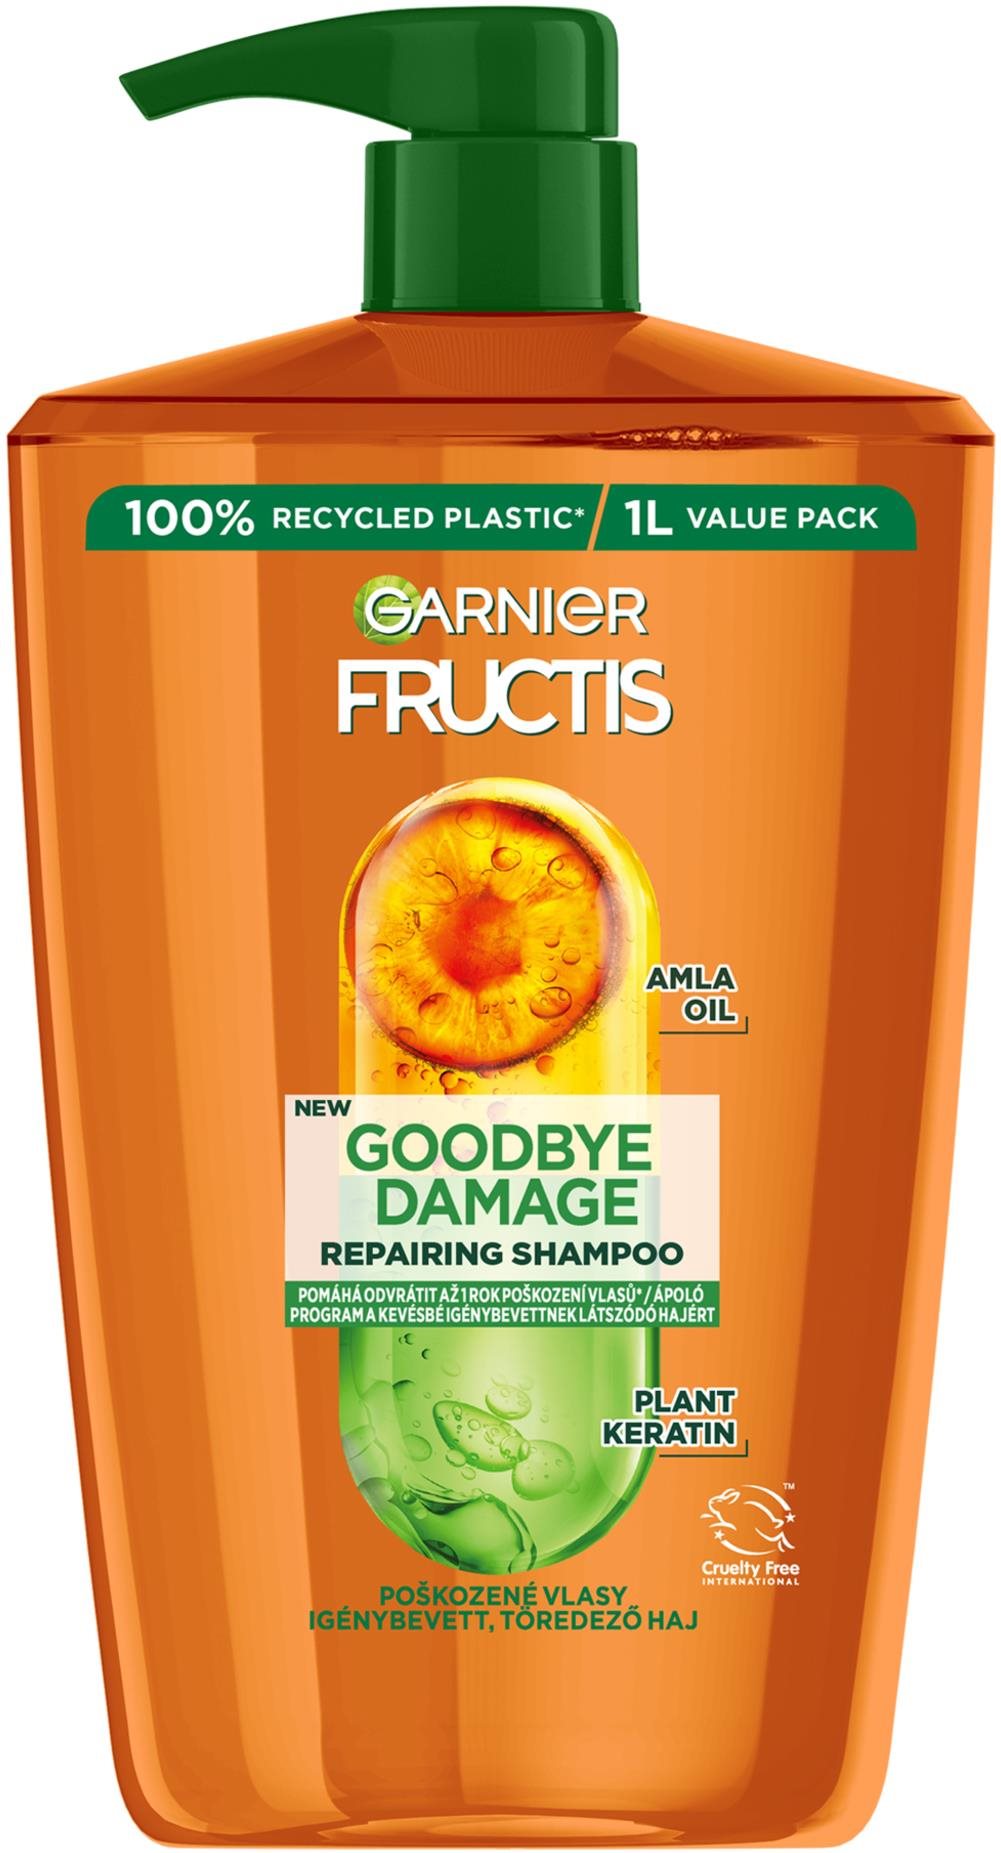 Sampon GARNIER Fructis Goodbye Damage sampon 1000 ml